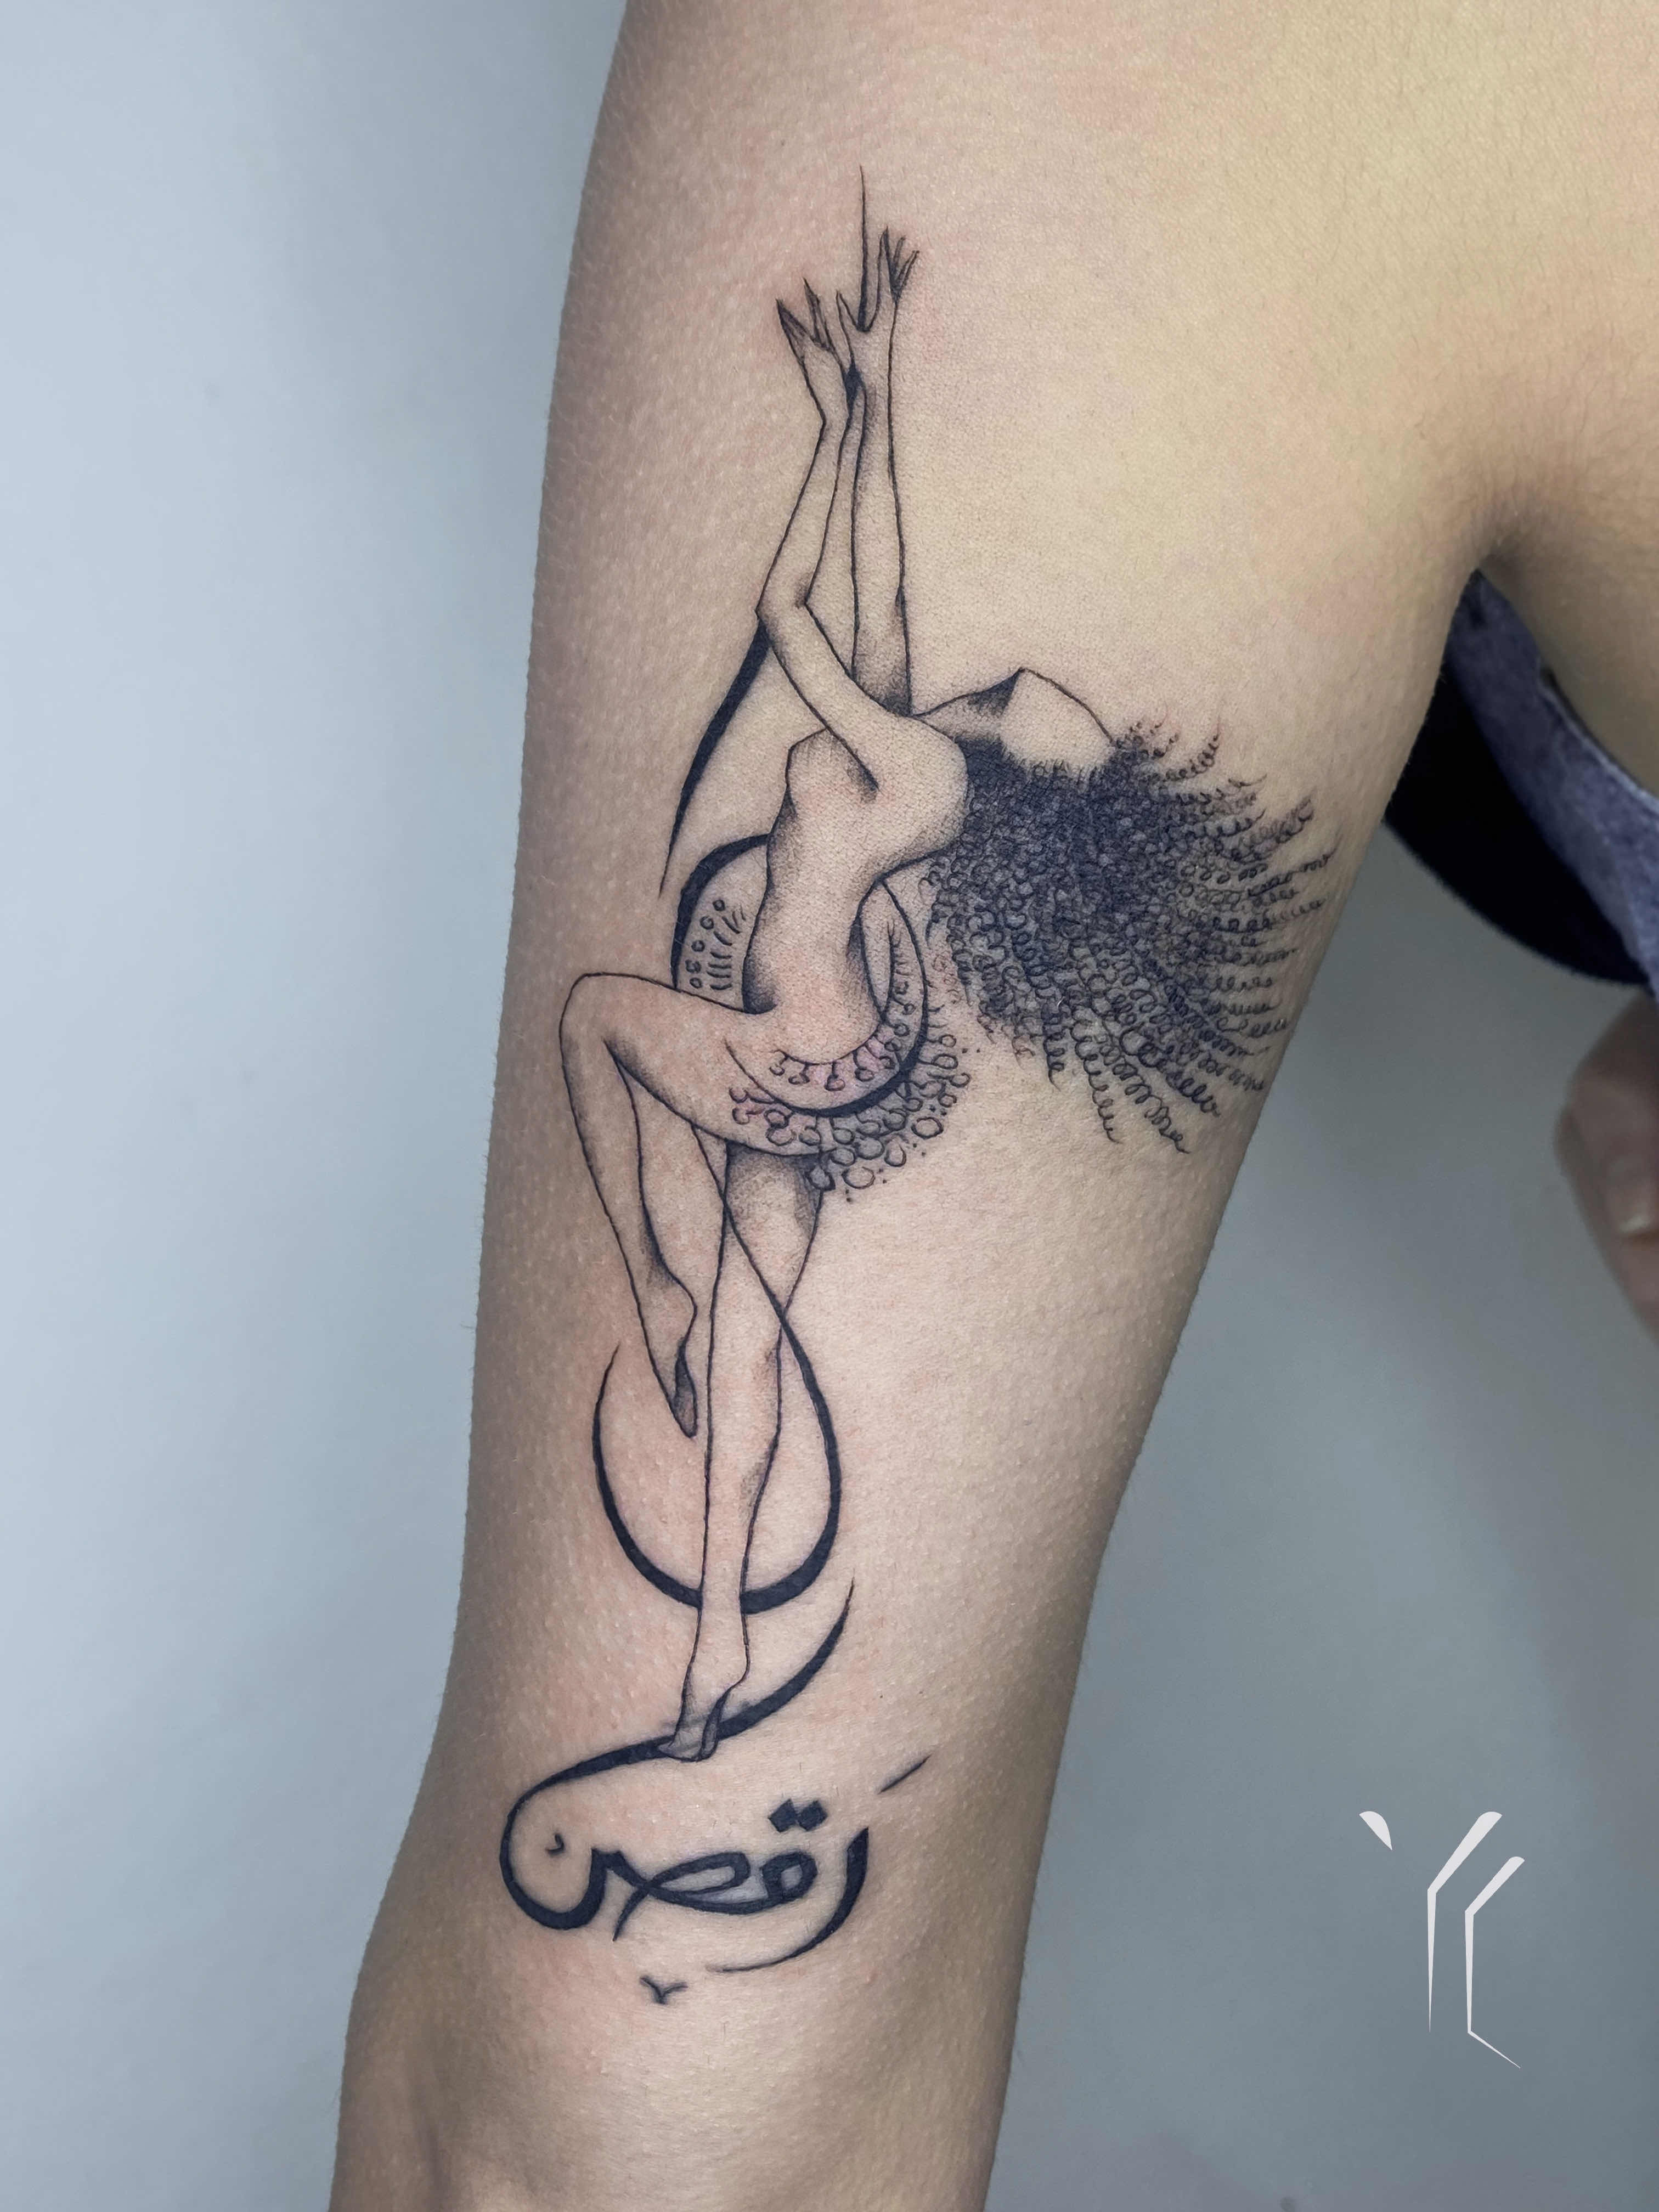 Krishna Tattoo Design Ideas Images | Arm tattoos for guys, Krishna tattoo,  Naruto tattoo